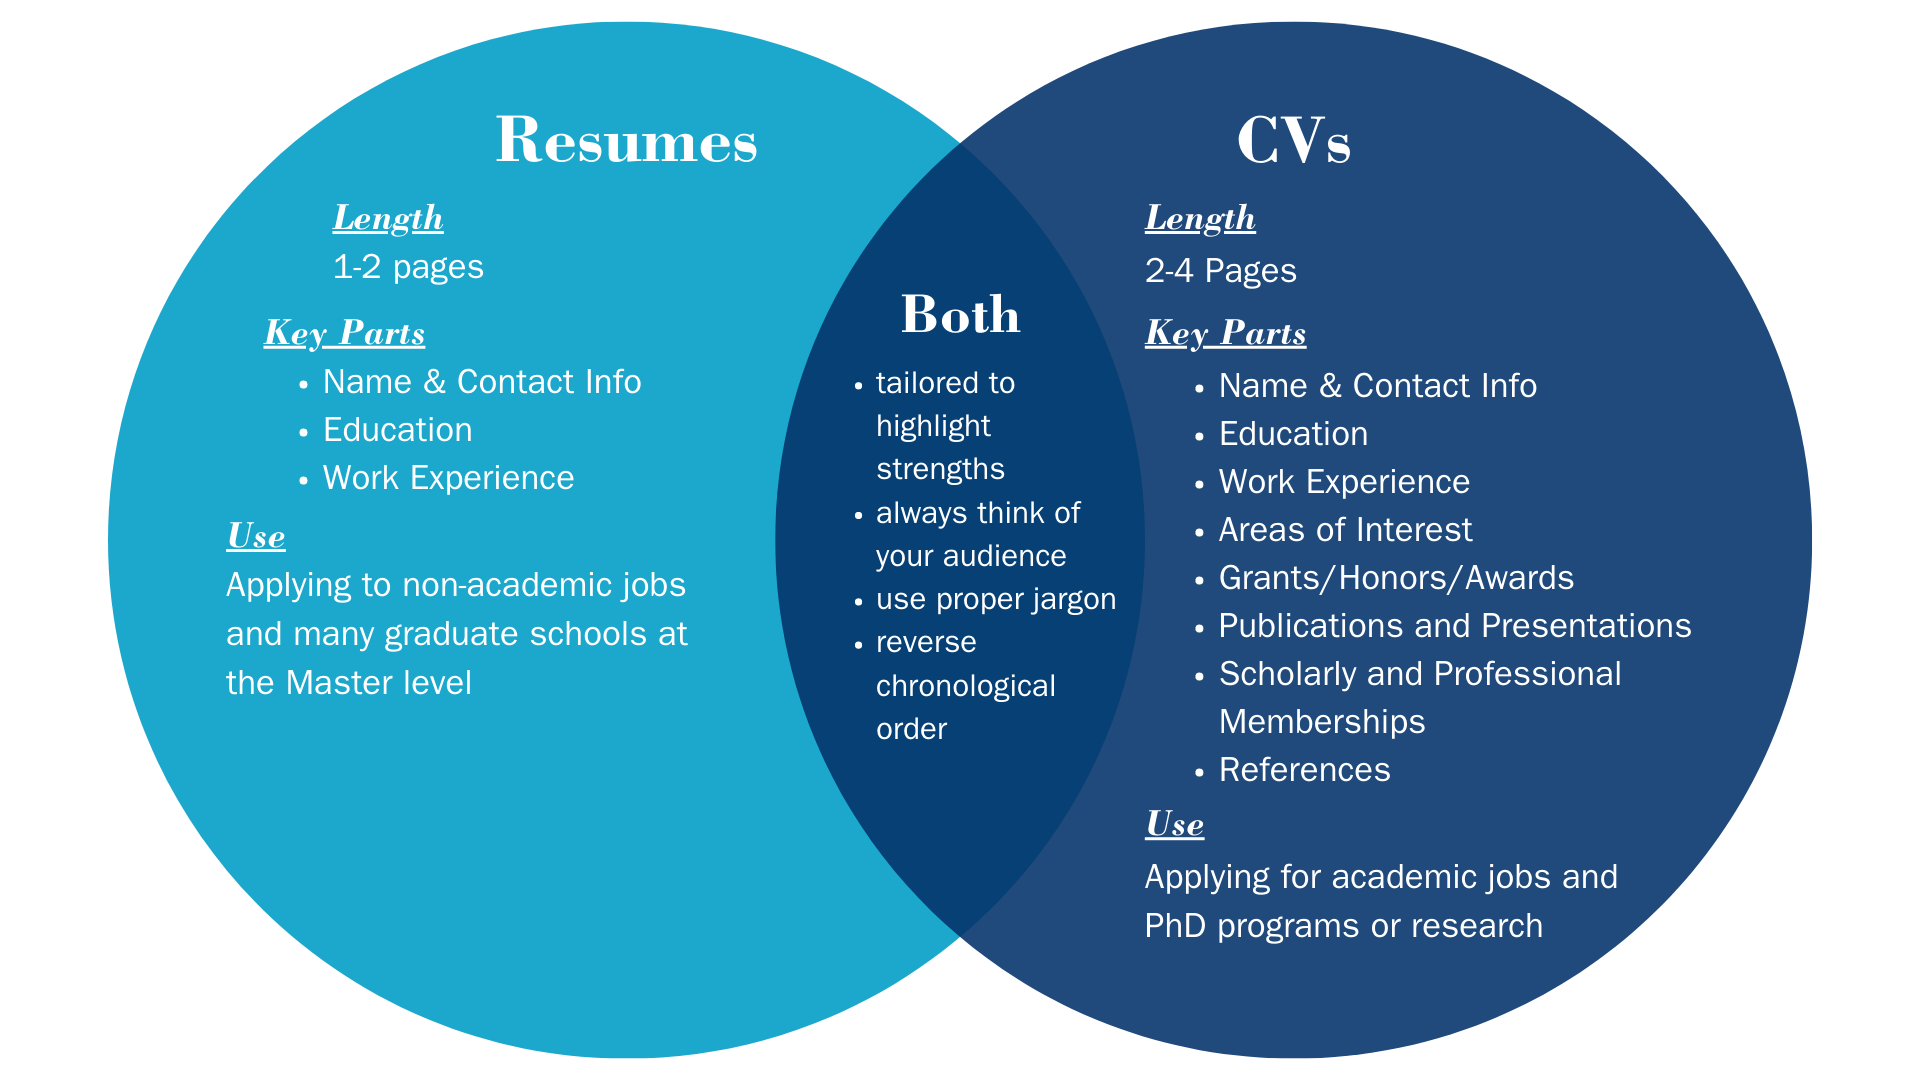 Resume vs. CVs